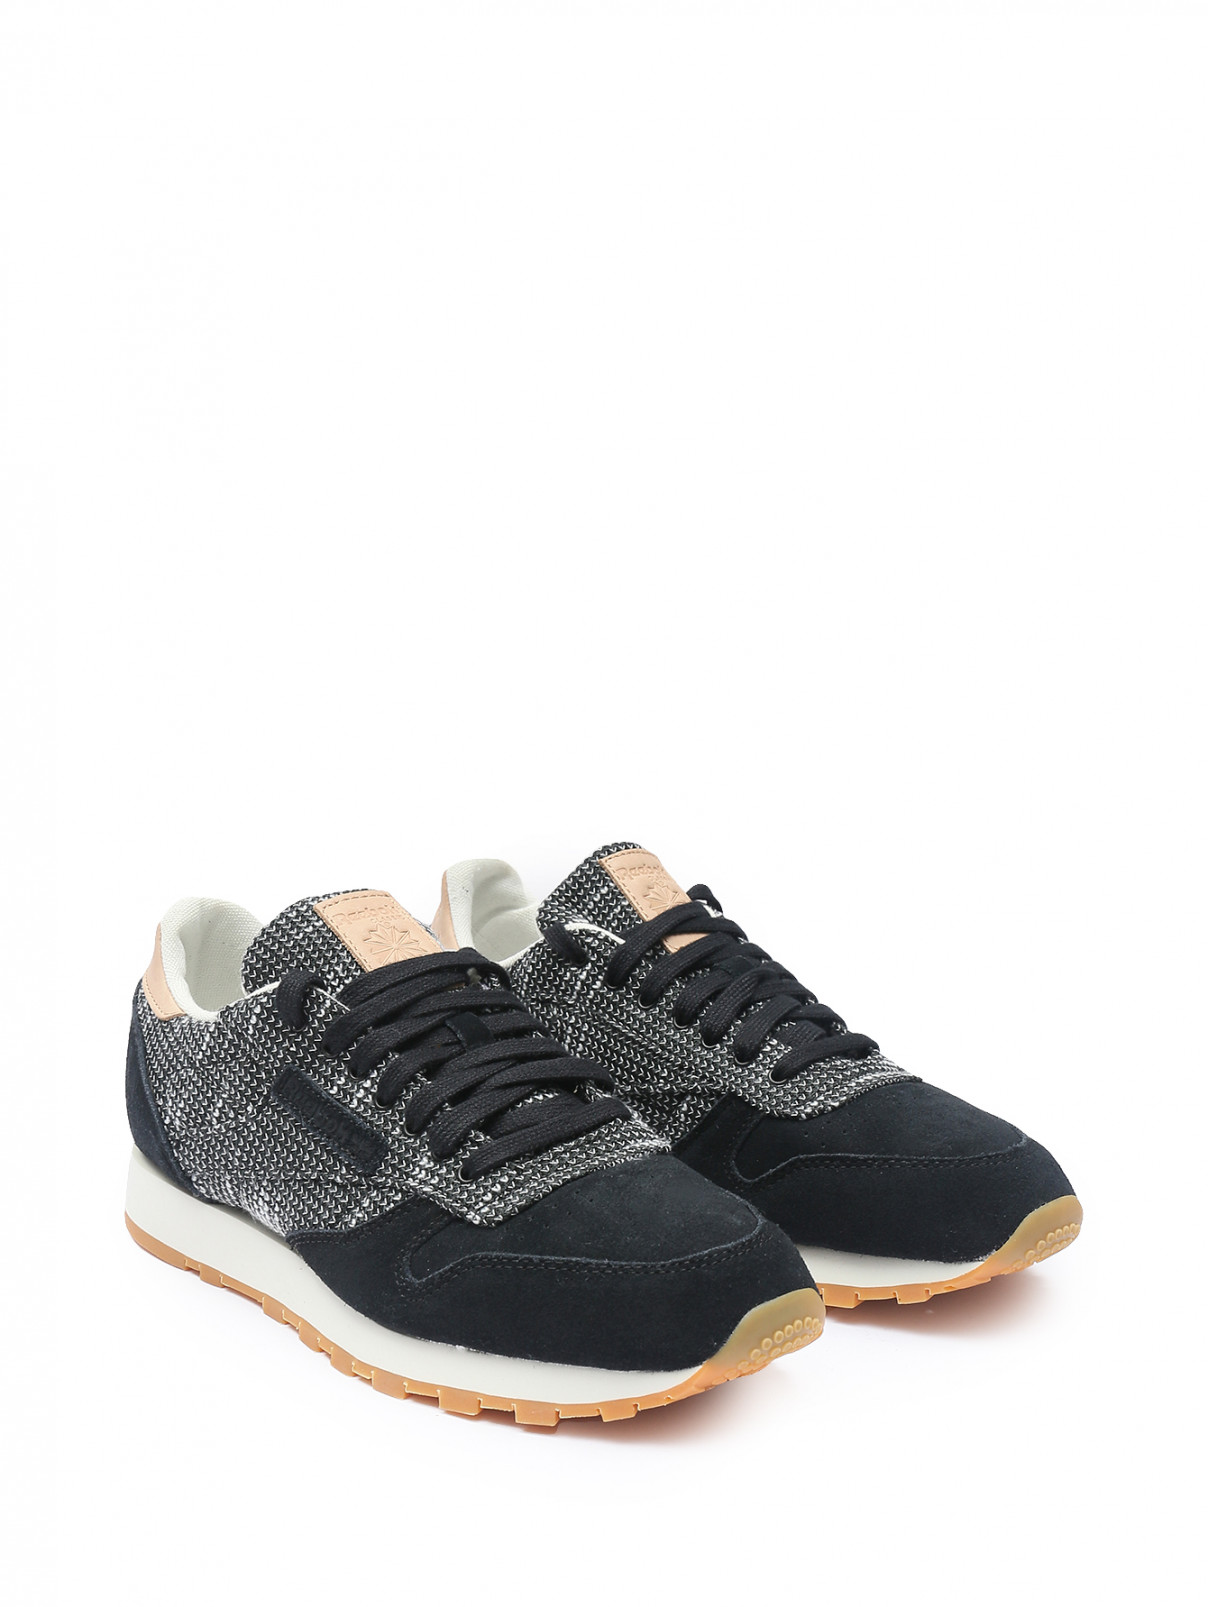 Комбинированные кроссовки с узором Reebok Classic  –  Общий вид  – Цвет:  Черный